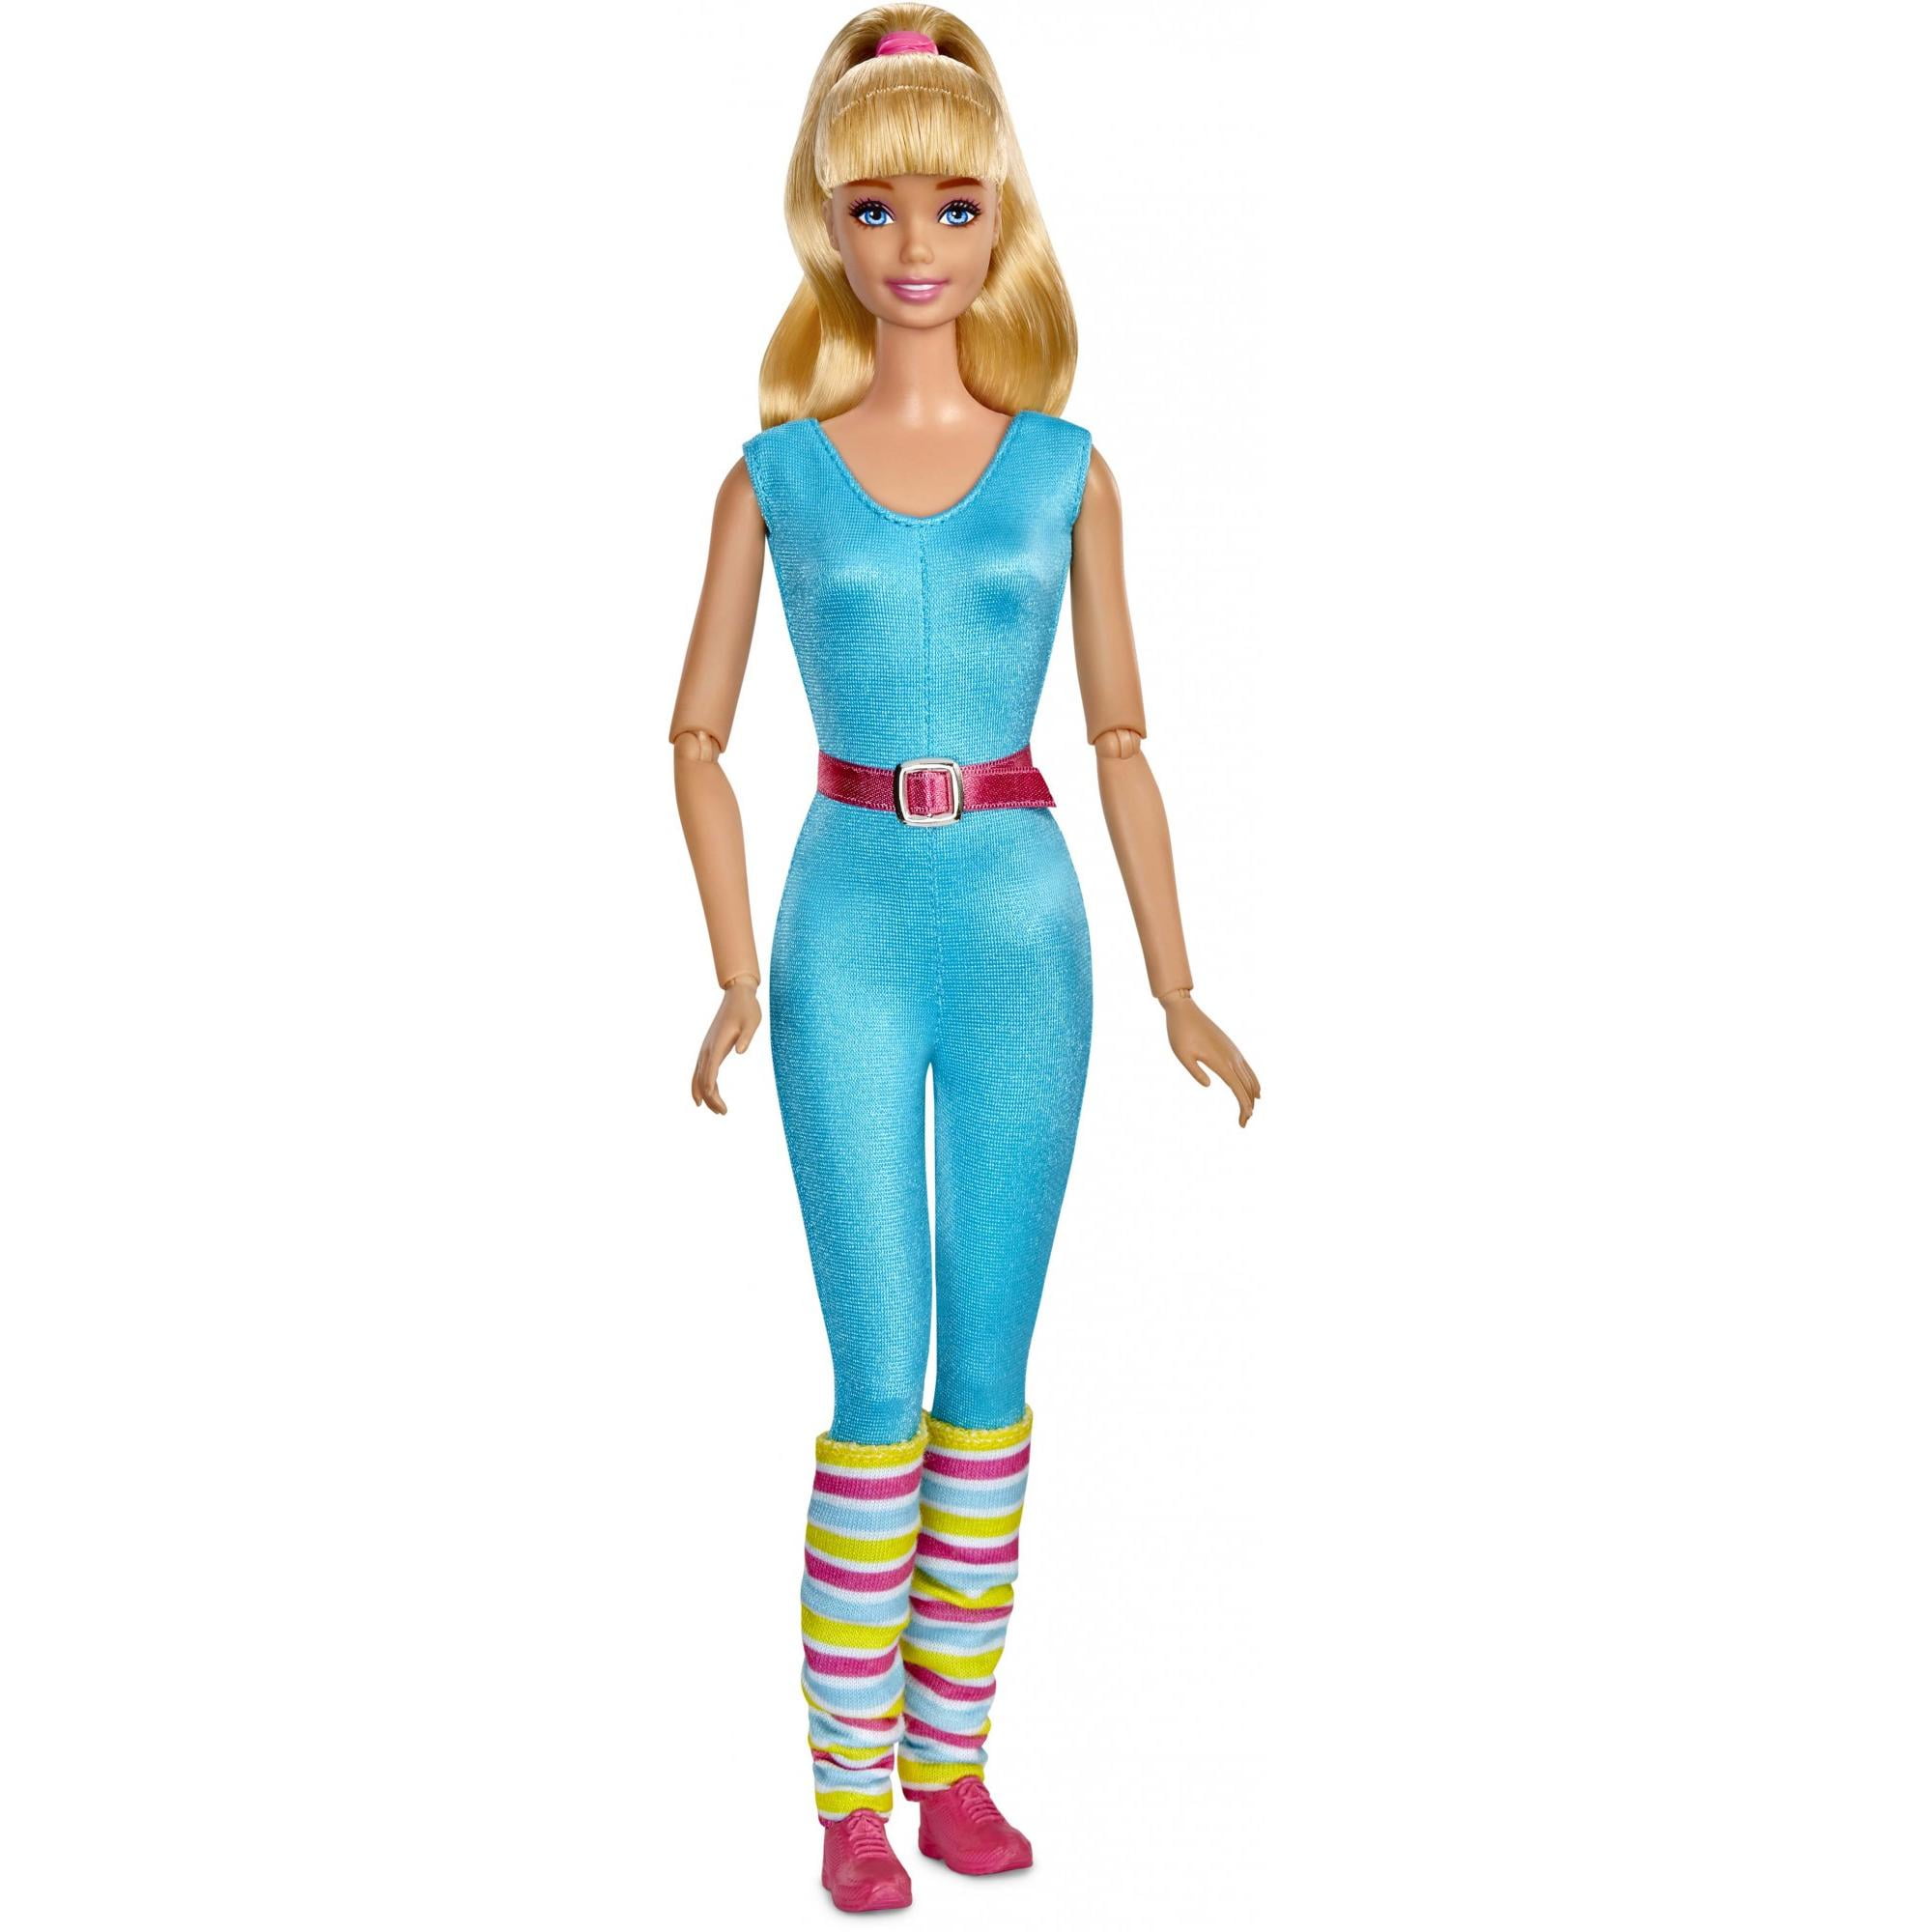 Игрушка барби купить. Кукла Маттель Барби. История игрушек кукла Барби Mattel. Барби Toy story 4. Куклы Mattel Barbie 4 куклы.